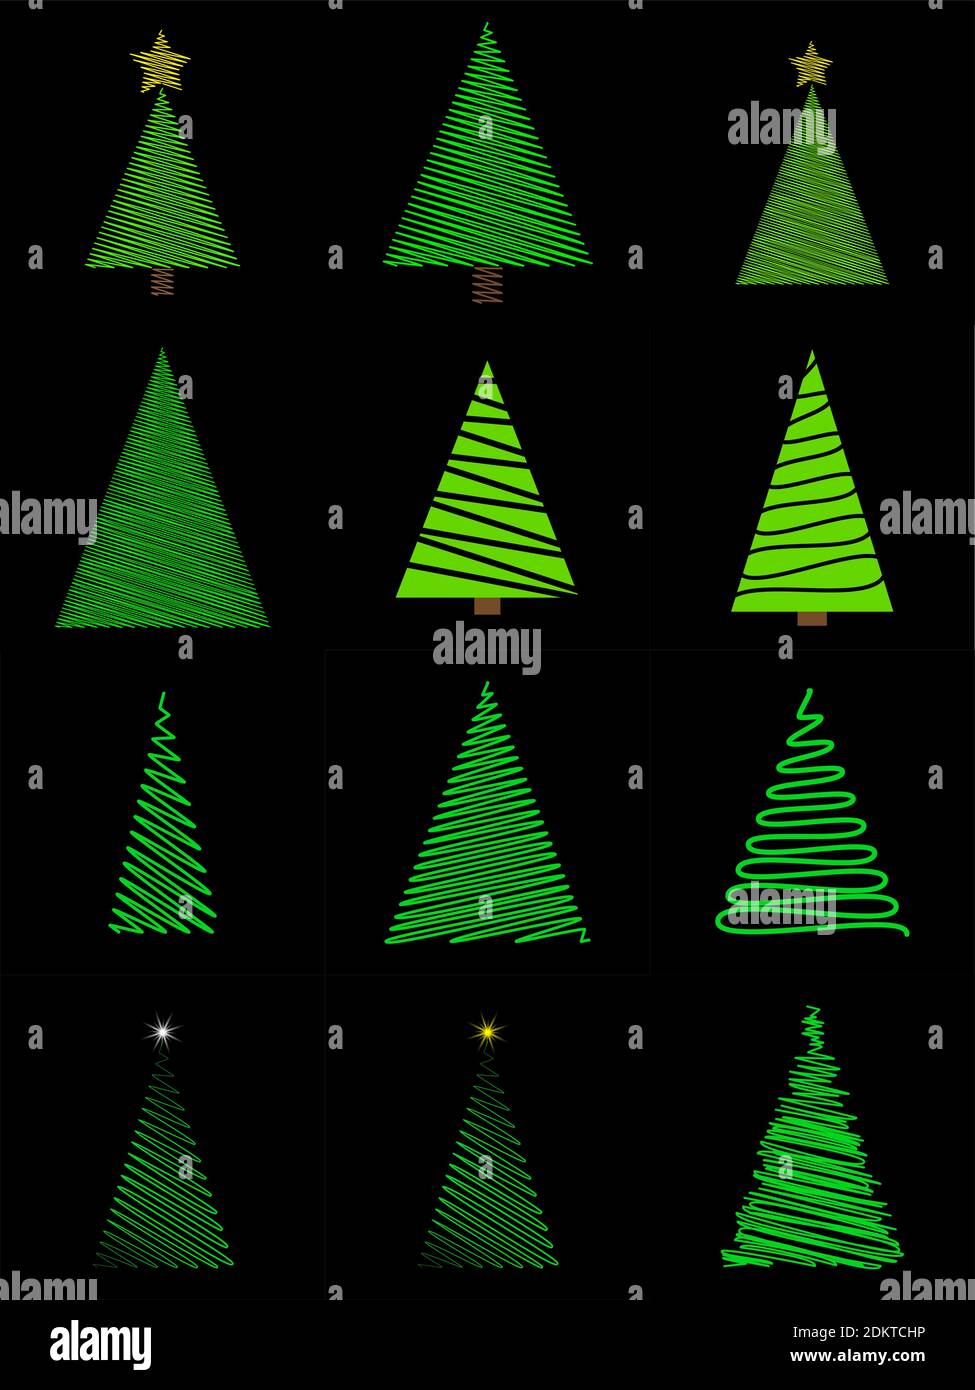 Doodle weihnachtsbaum im Scribble-Stil gesetzt. Grüne handgezeichnete Tannenbaum Sammlung. Vektordarstellung auf schwarzem Hintergrund isoliert. Urlaub minimal d Stock Vektor